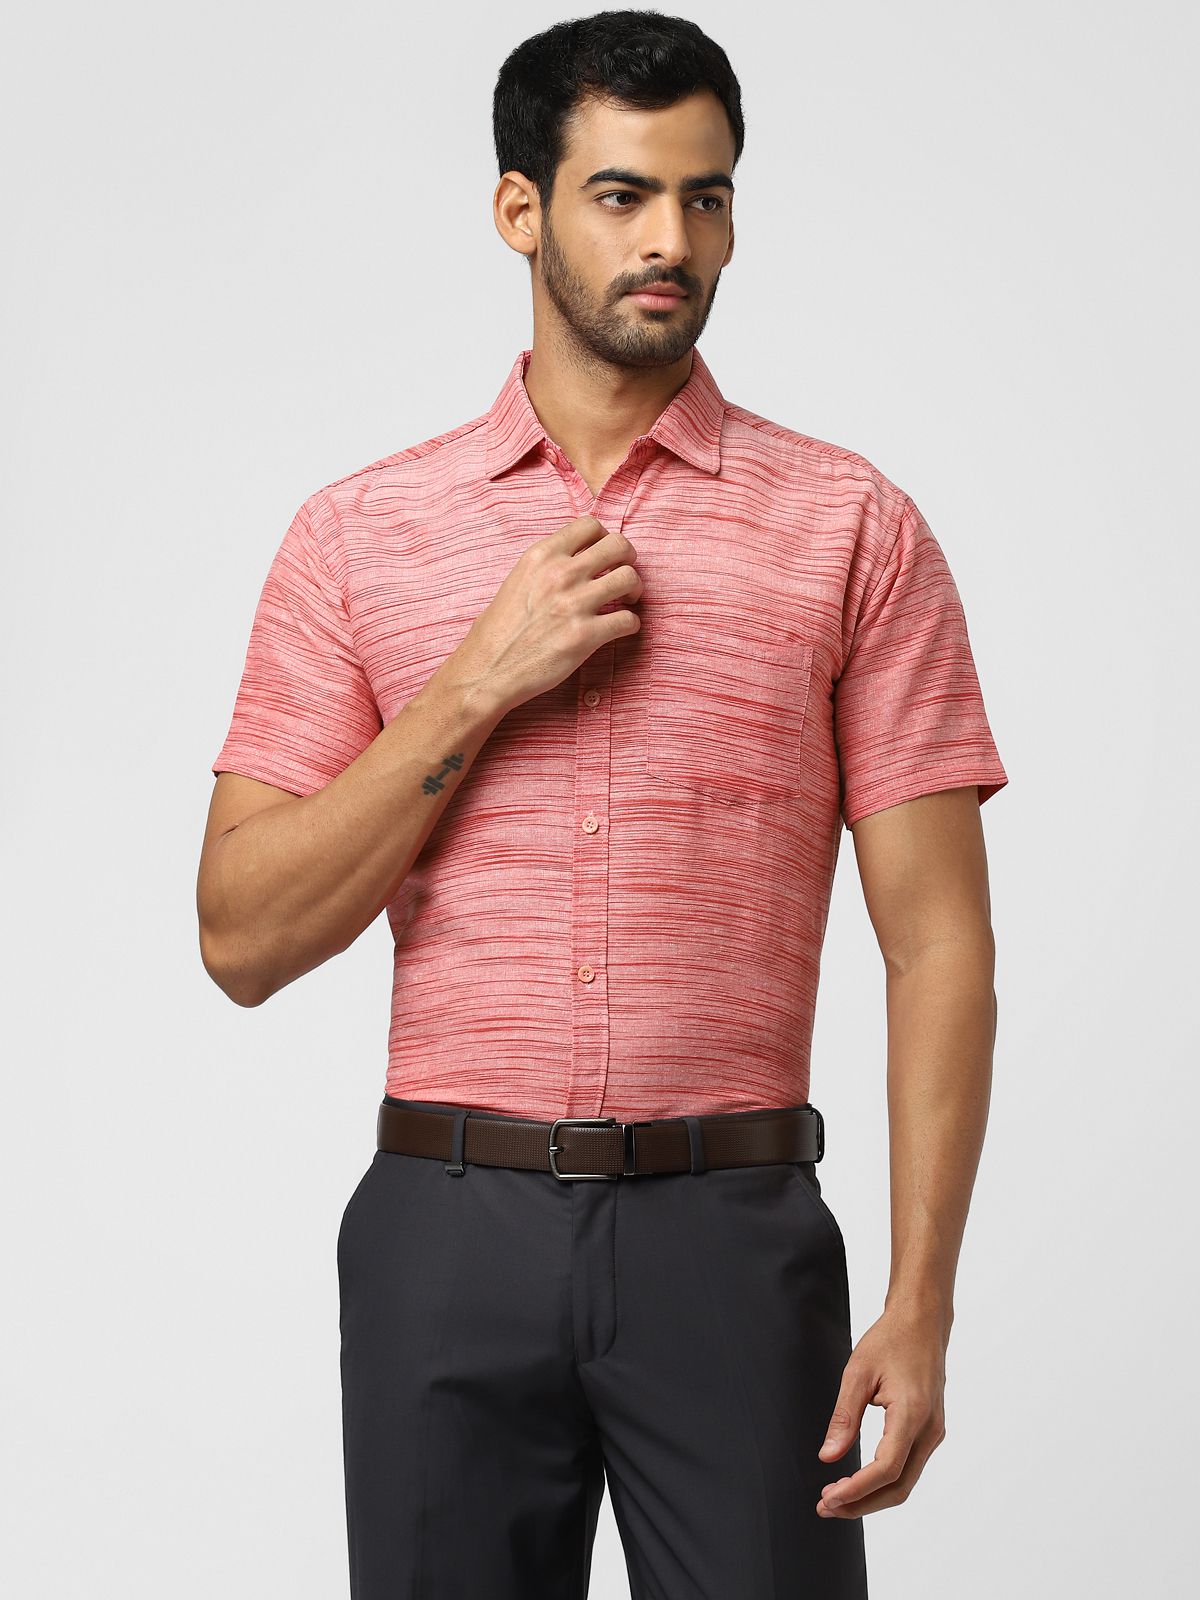     			DESHBANDHU DBK - Pink Cotton Regular Fit Men's Formal Shirt (Pack of 1)